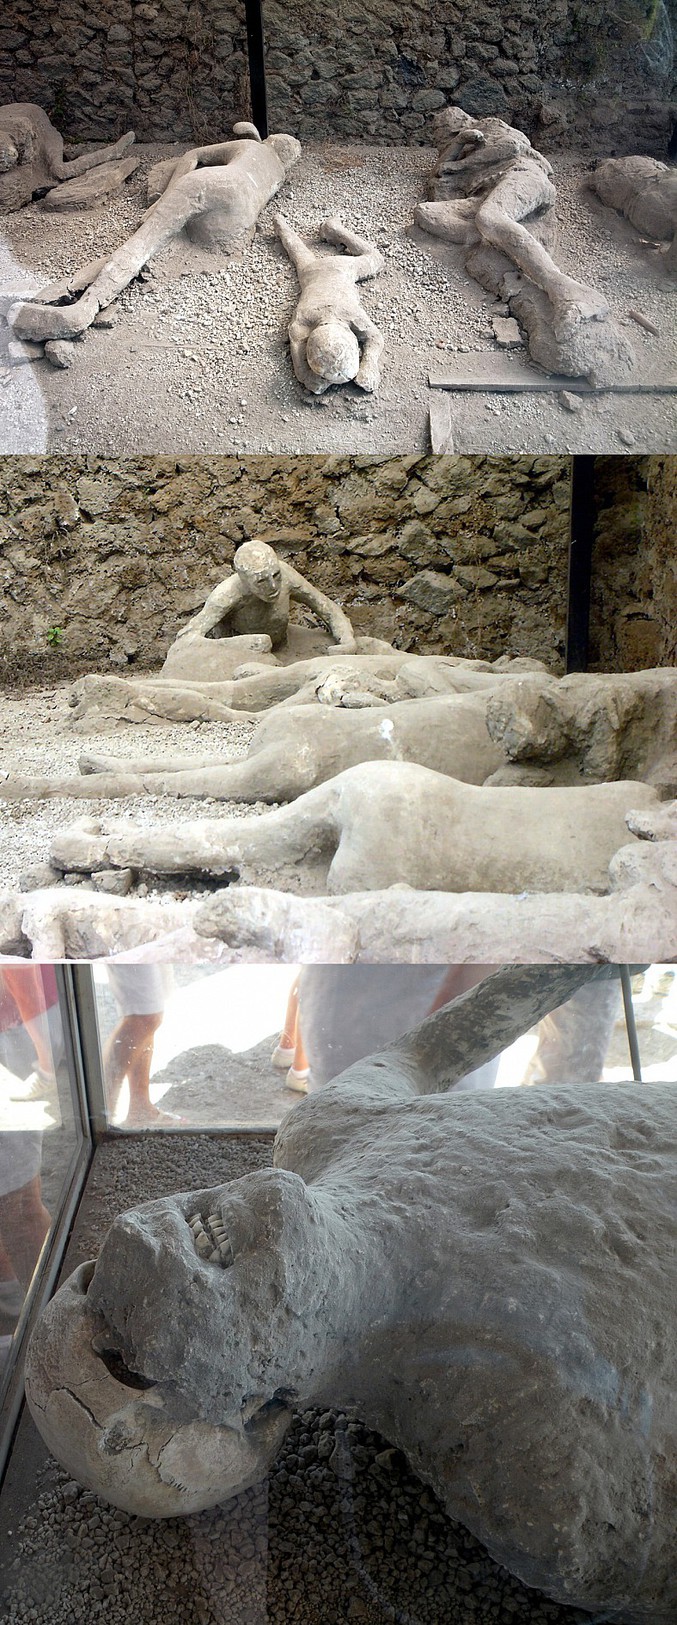 Il y a presque 2000 ans (en 79), la destruction de Pompéi résulta de l'ensevelissement de la ville romaine de Pompéi sous les cendres libérées par l'éruption du Vésuve.
